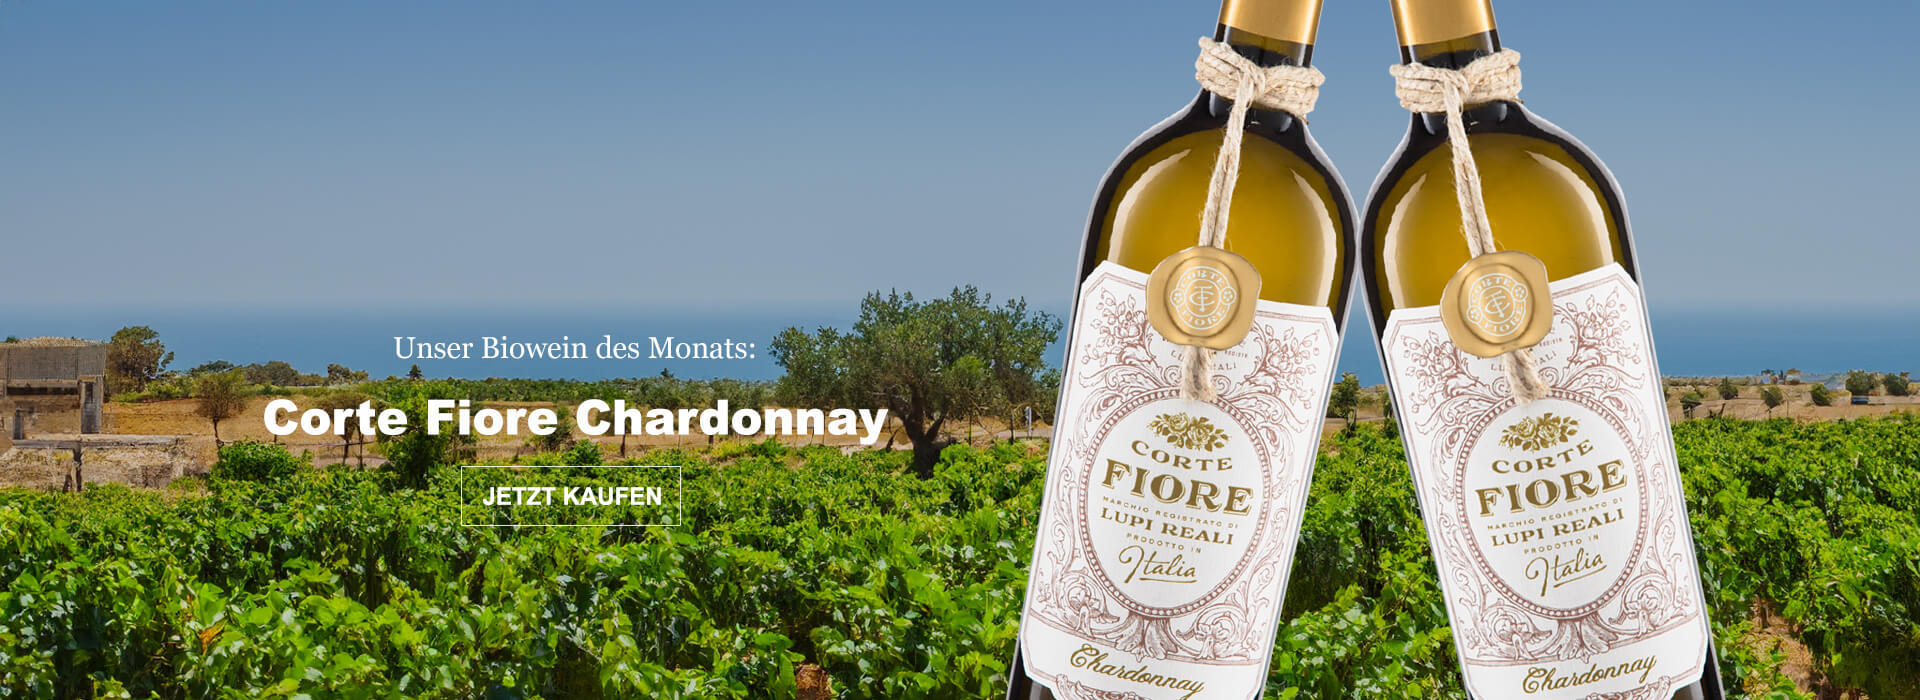 Unser Biowein des Monats: Corte Fiore Chardonnay